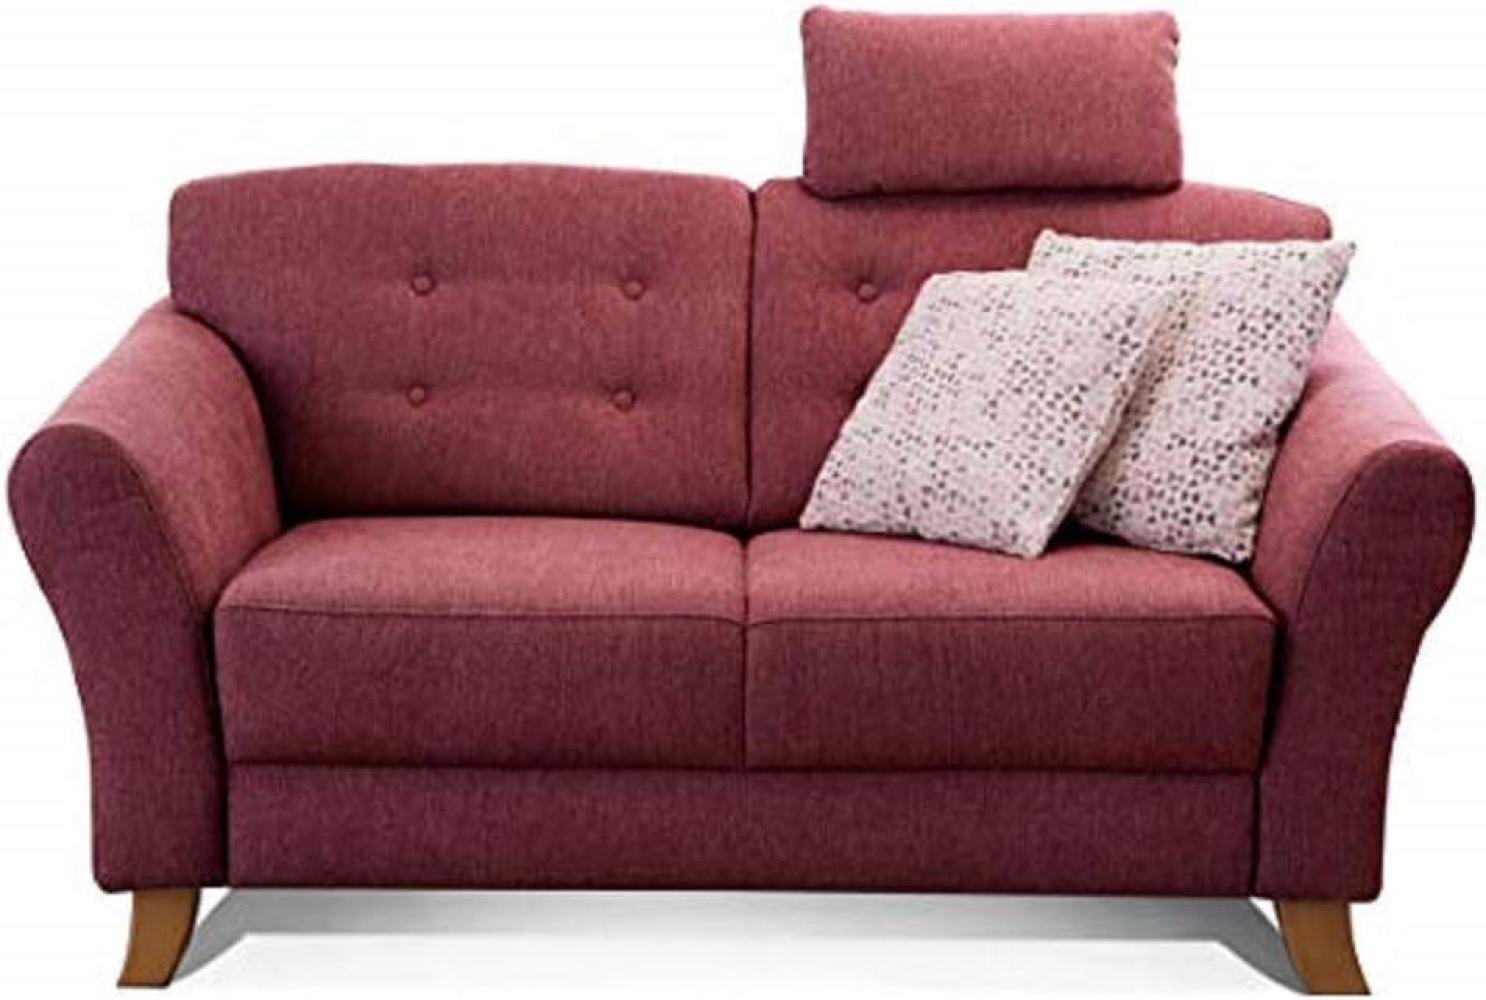 Cavadore 2-Sitzer-Sofa / Moderne Couch im Landhausstil mit Knopfeinzug im Rücken / Federkern / Inkl. Kopfstütze / 163 x 89 x 90 / Flachgewebe rot Bild 1